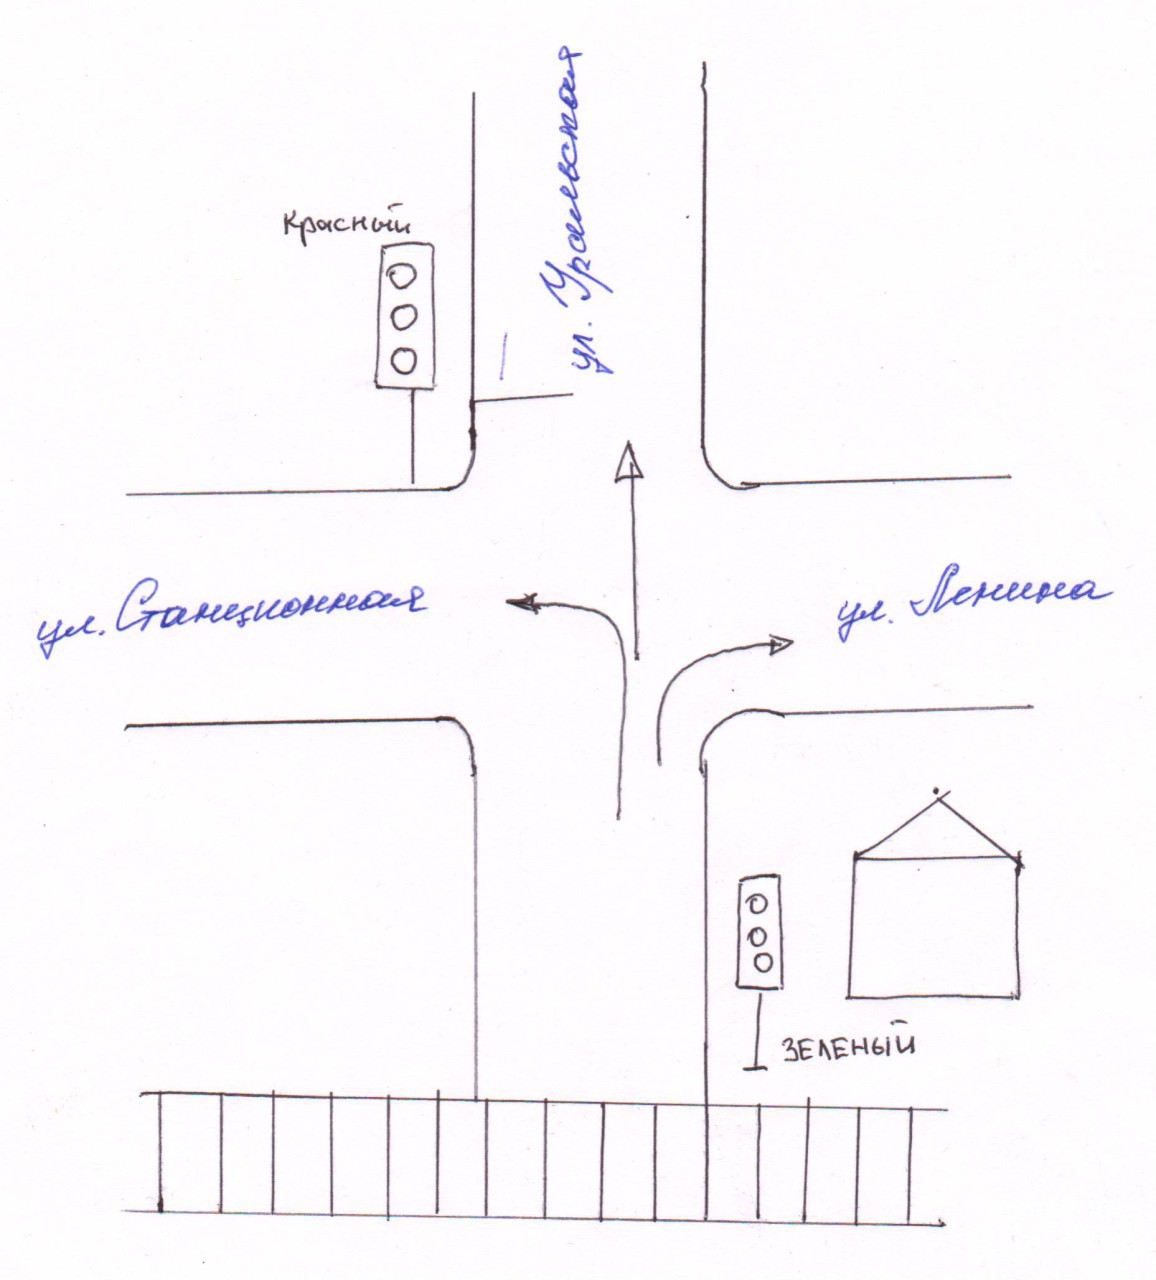 Наглядная схема, предложенная артемовцем для решения проблеммы с движением через переезд. Скан схемы жителя Артемовского.